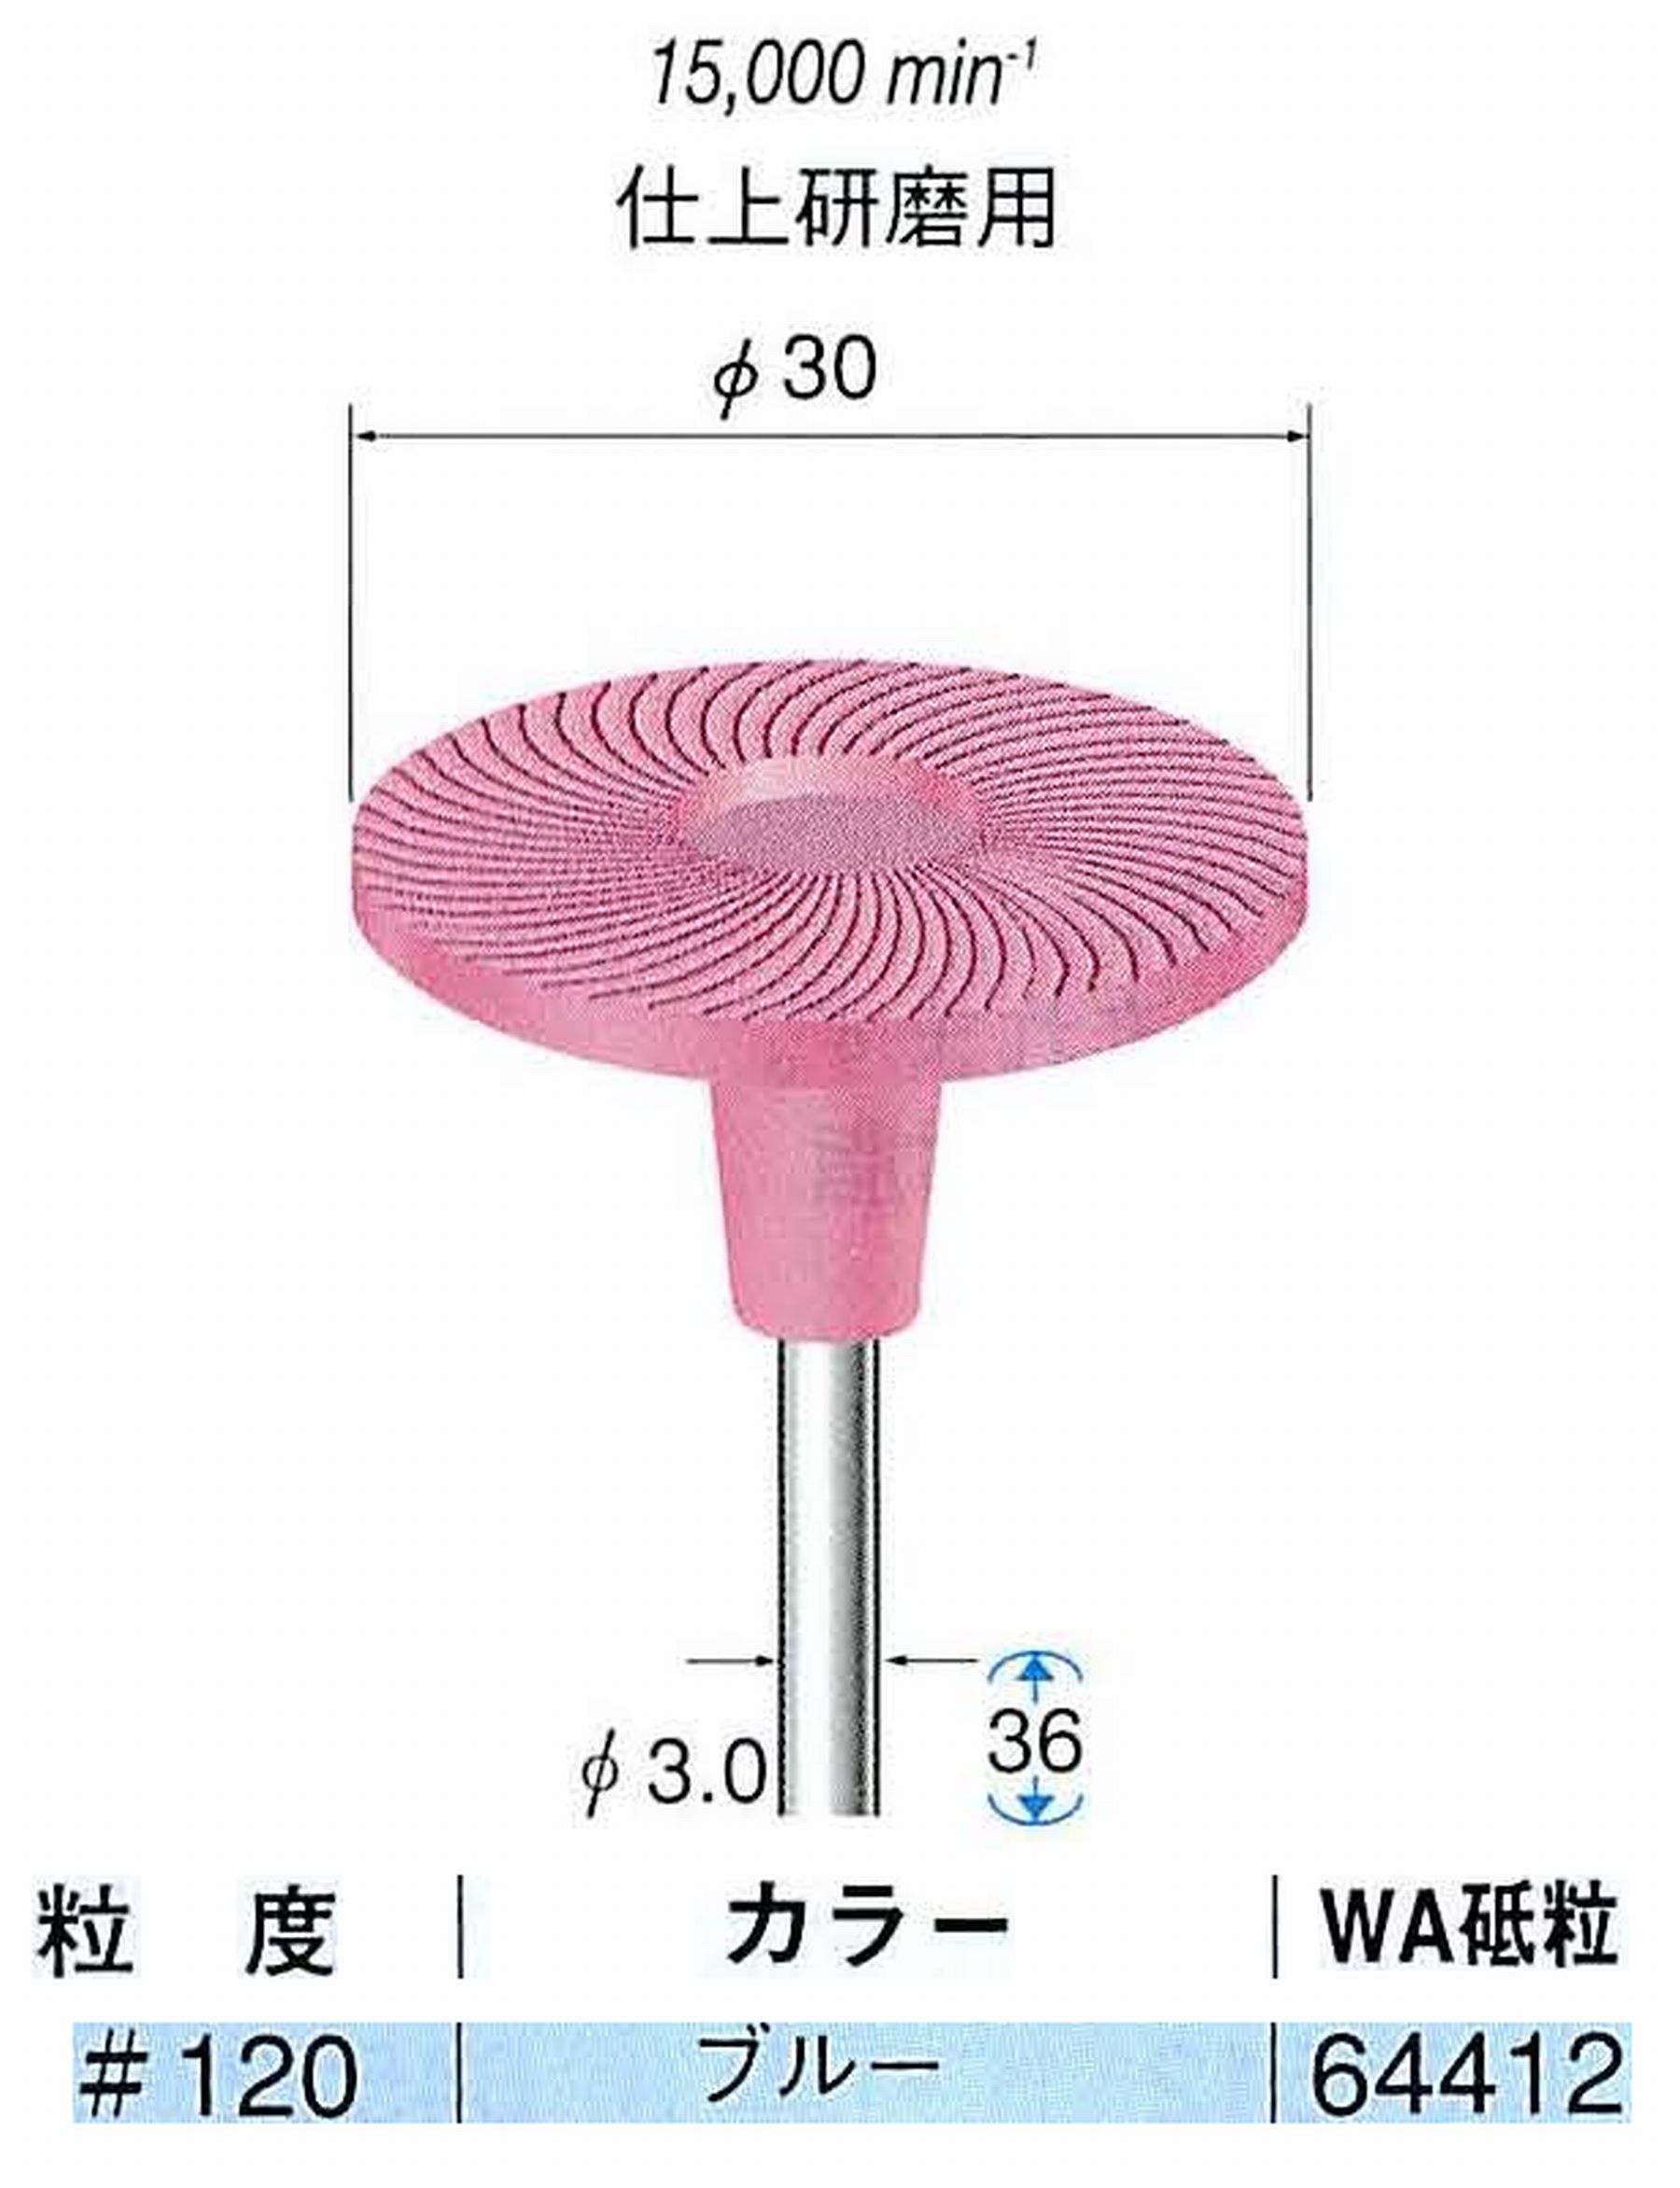 ナカニシ/NAKANISHI アングルグラインダ(電動・エアー) アングルアタッチメント専用工具 軸付ゴム砥石ディスク(ゴムパット一体型)WA砥粒 軸径(シャンク)φ3.0mm 64412